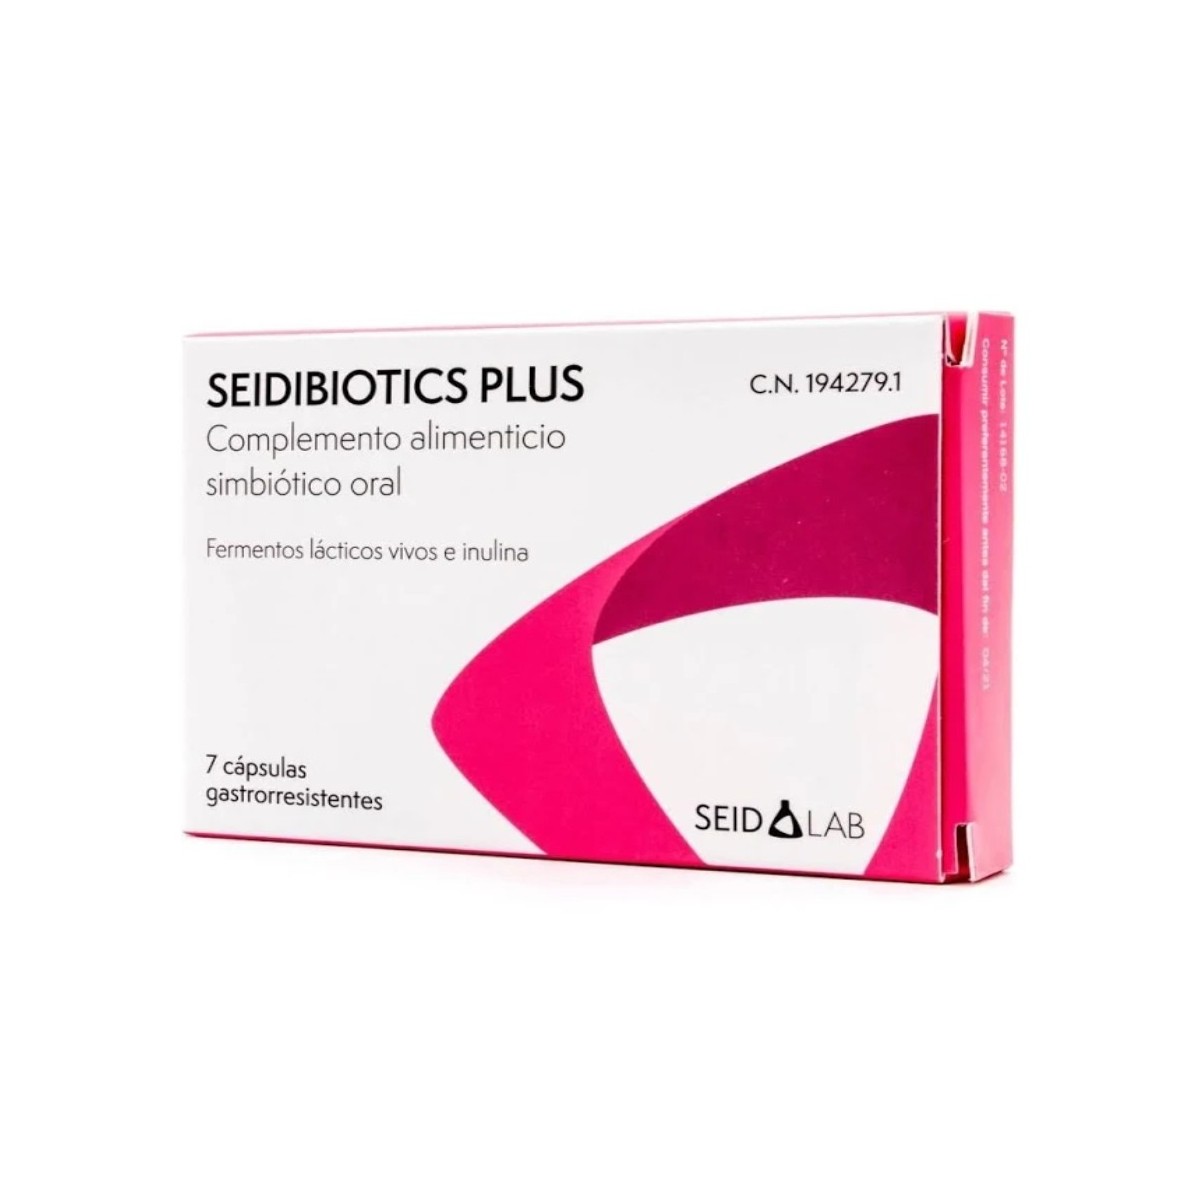 seidibiotics plus 7 capsulas